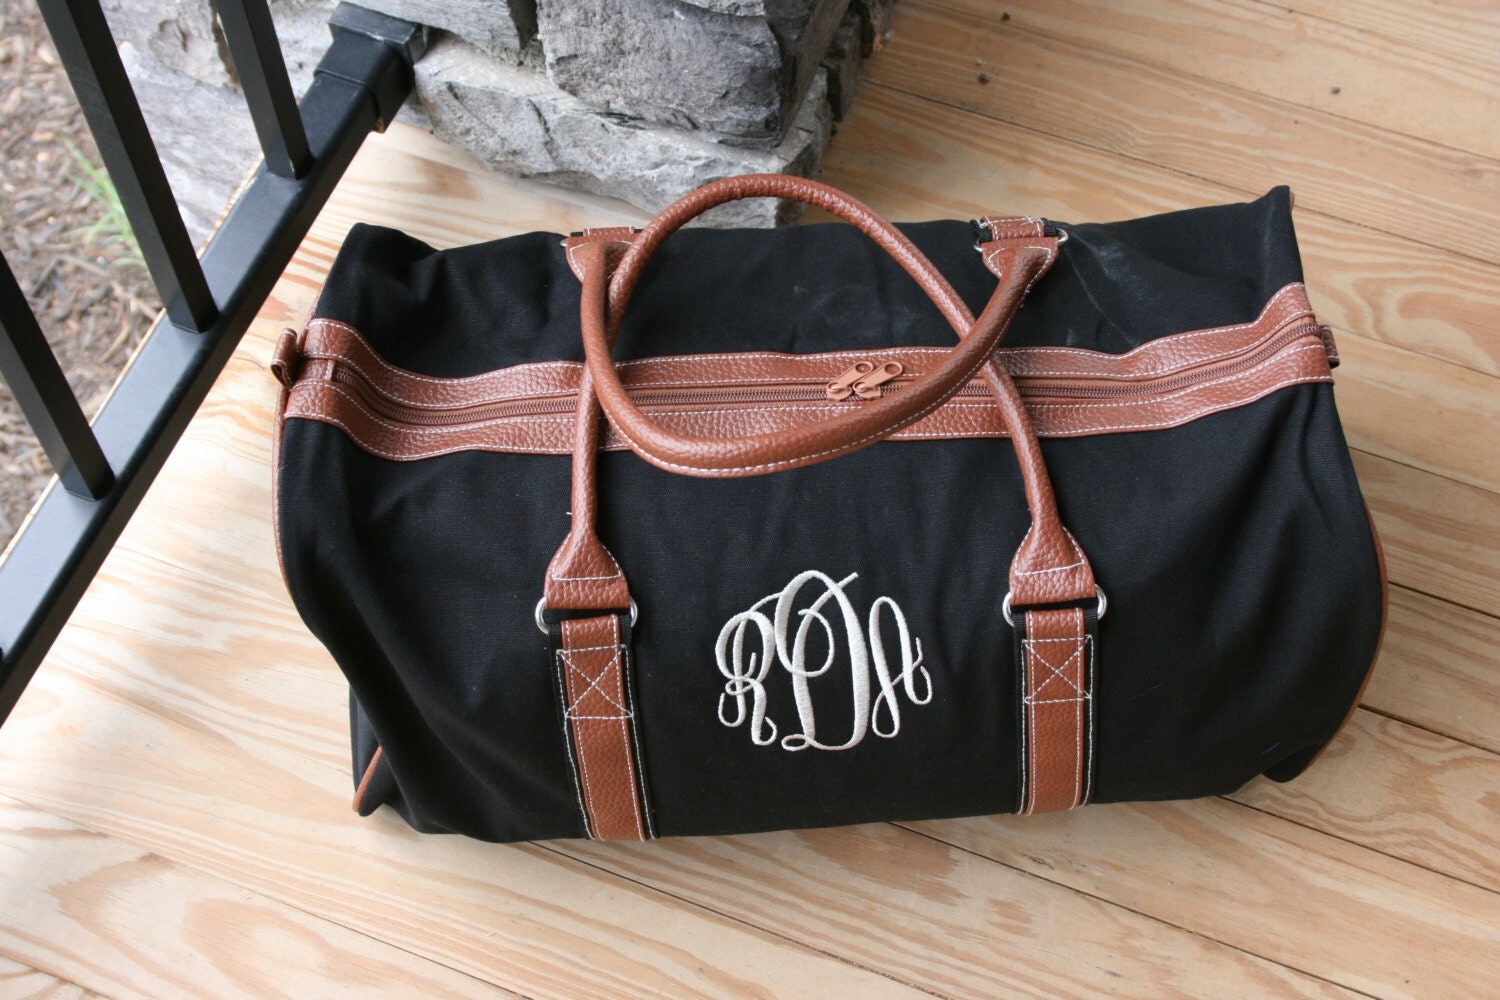 Monogrammed Mens Duffel Bag Personalized Black Weekender Bag